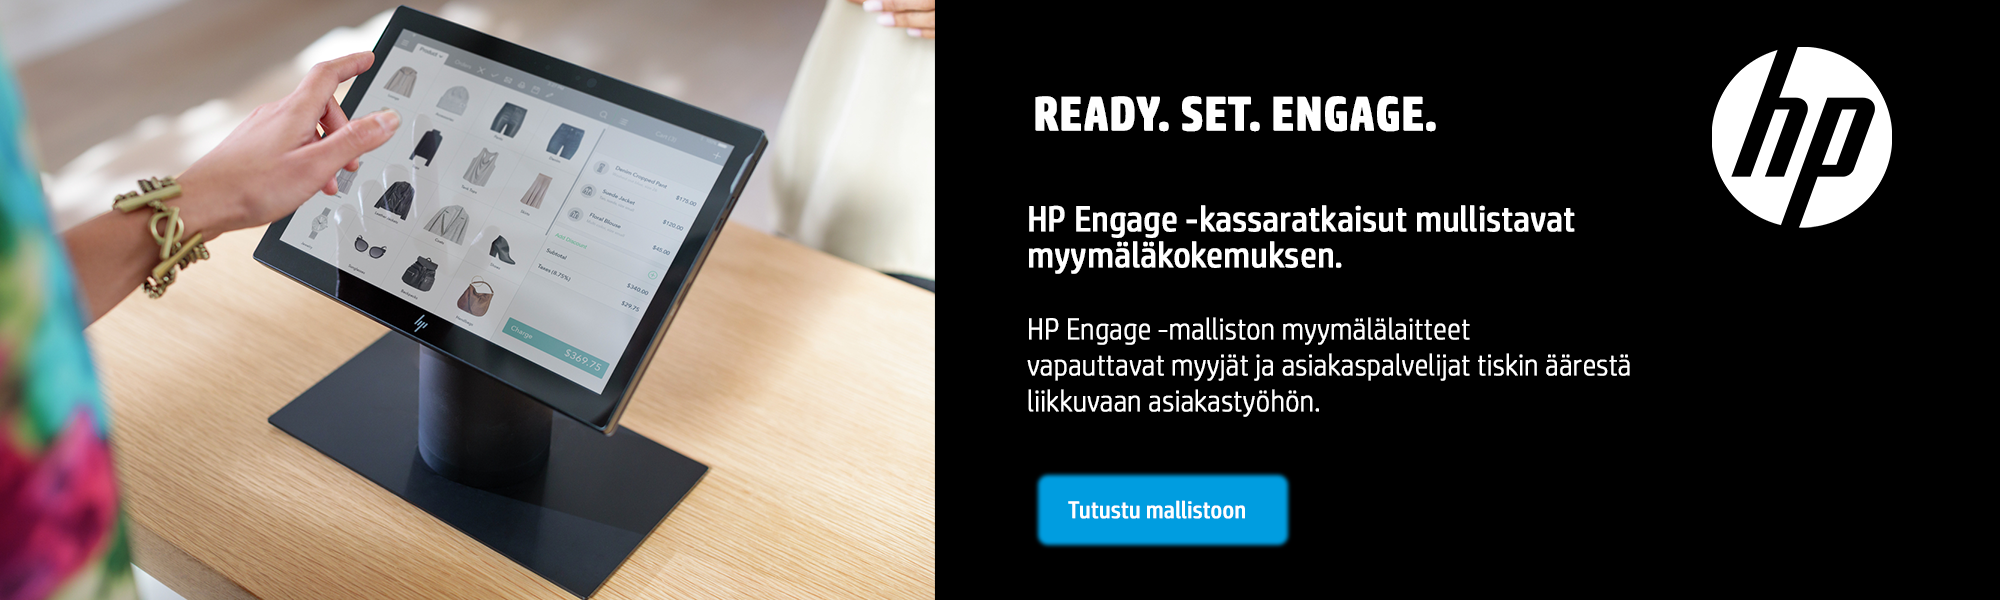 Uusi HP Engage